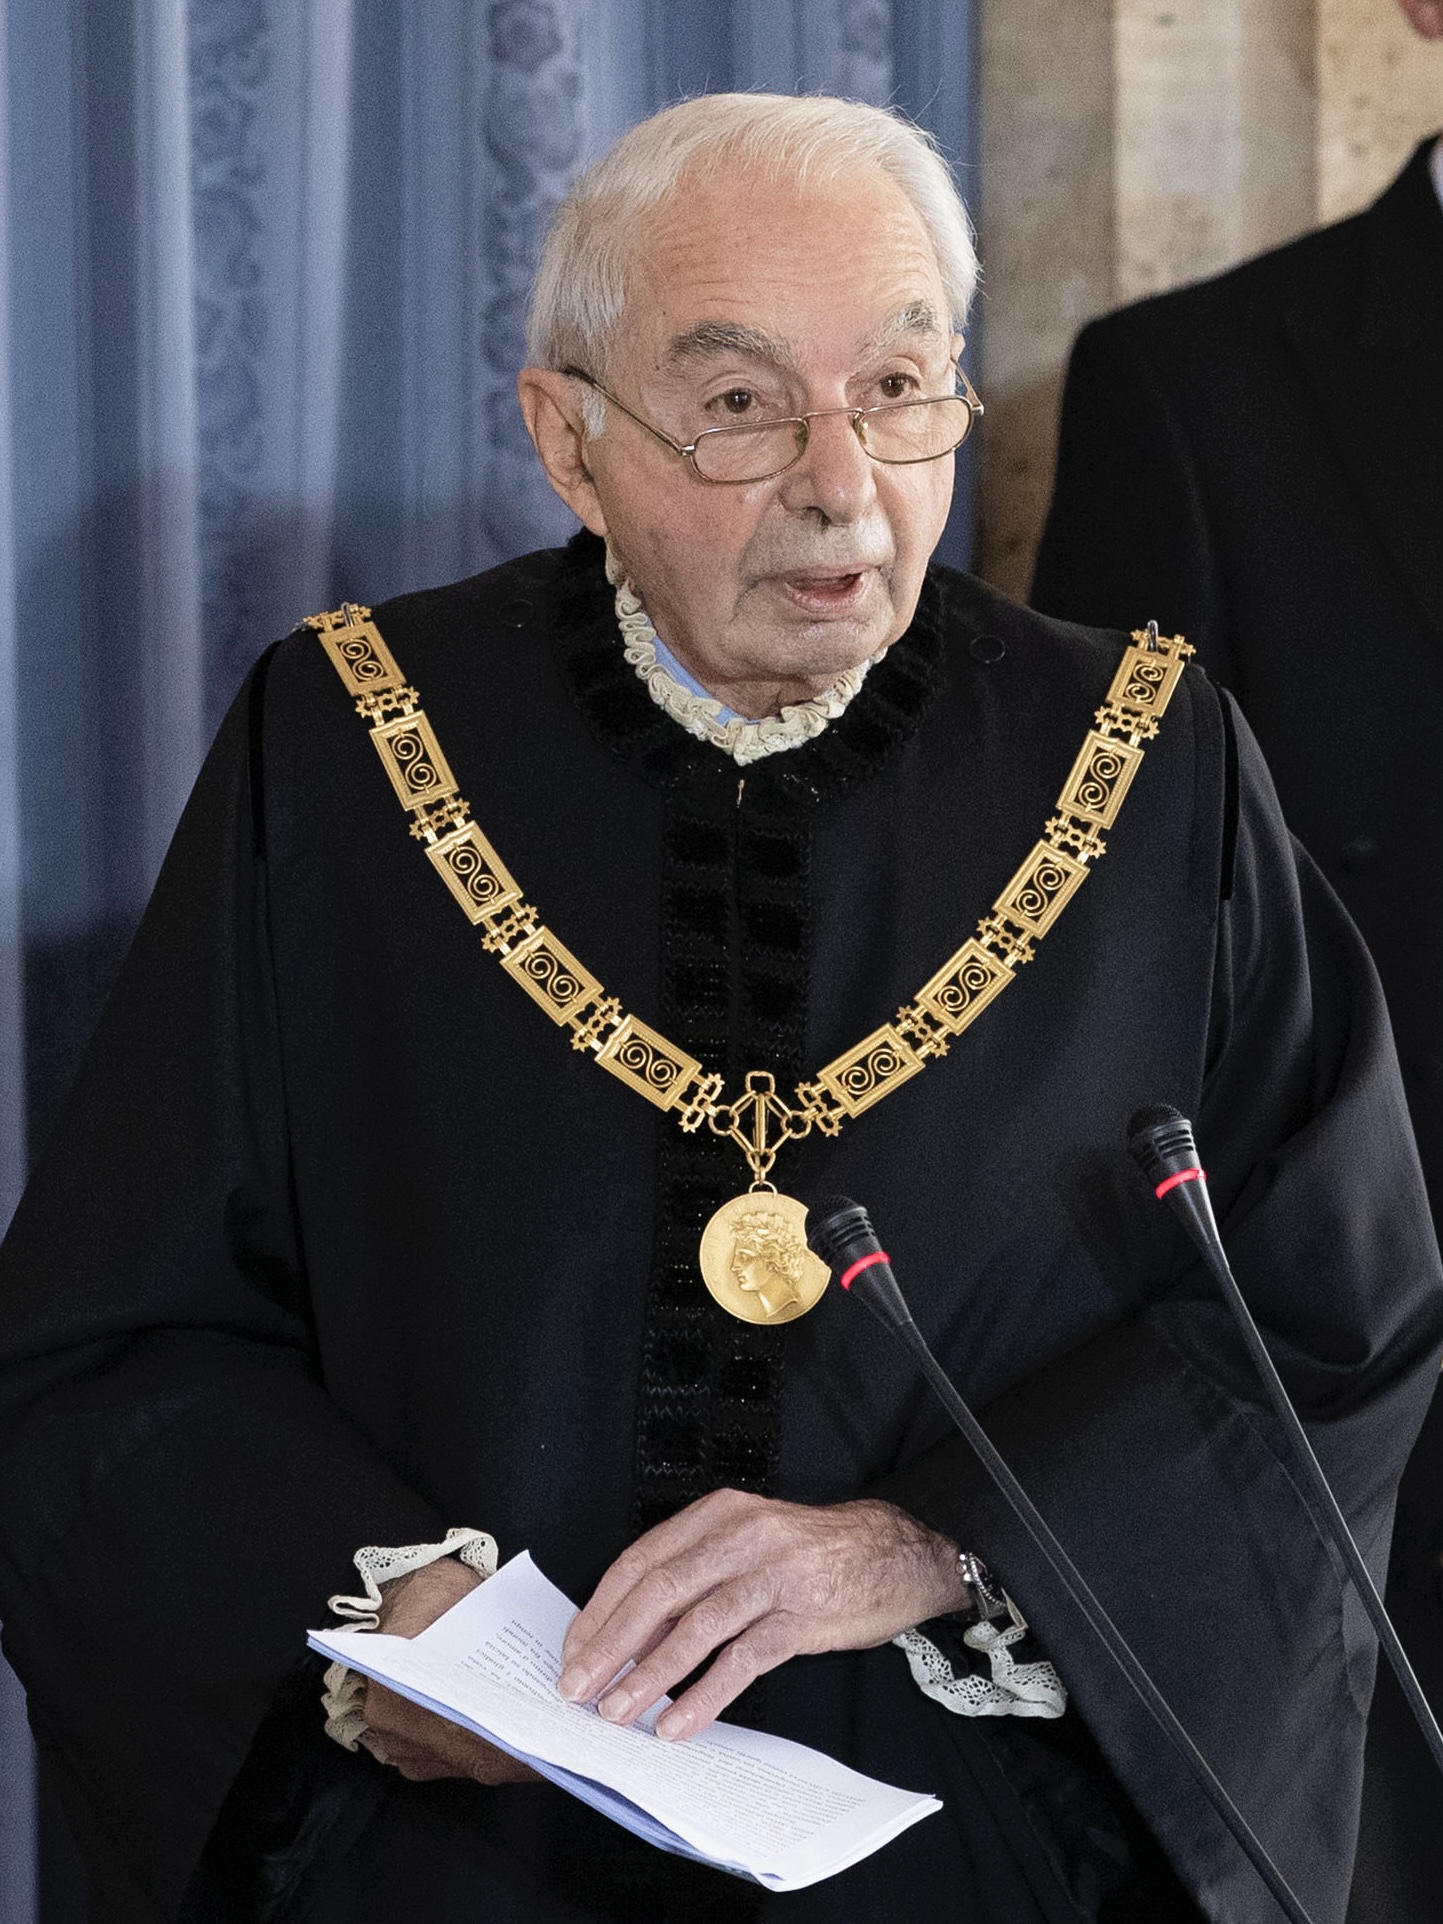 Giuliano Amato es presidente del Tribunal Constitucional italiano.